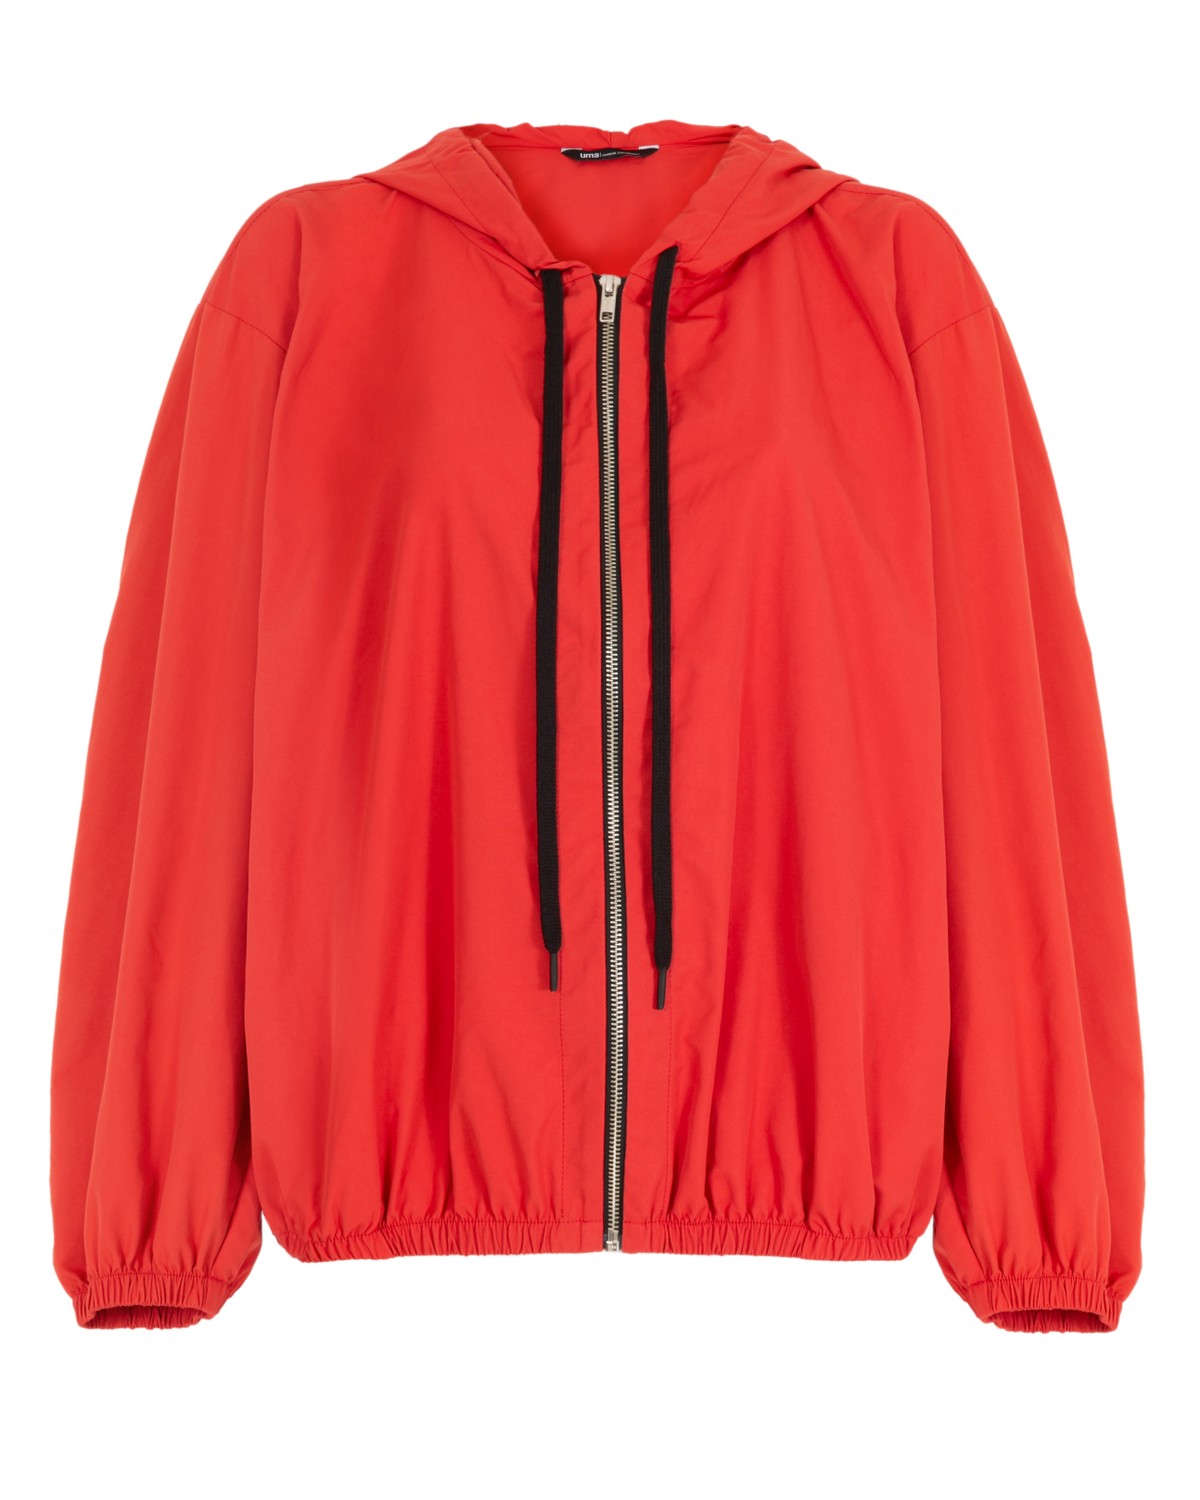 jaqueta ampla em nylon | nylon wide jacket